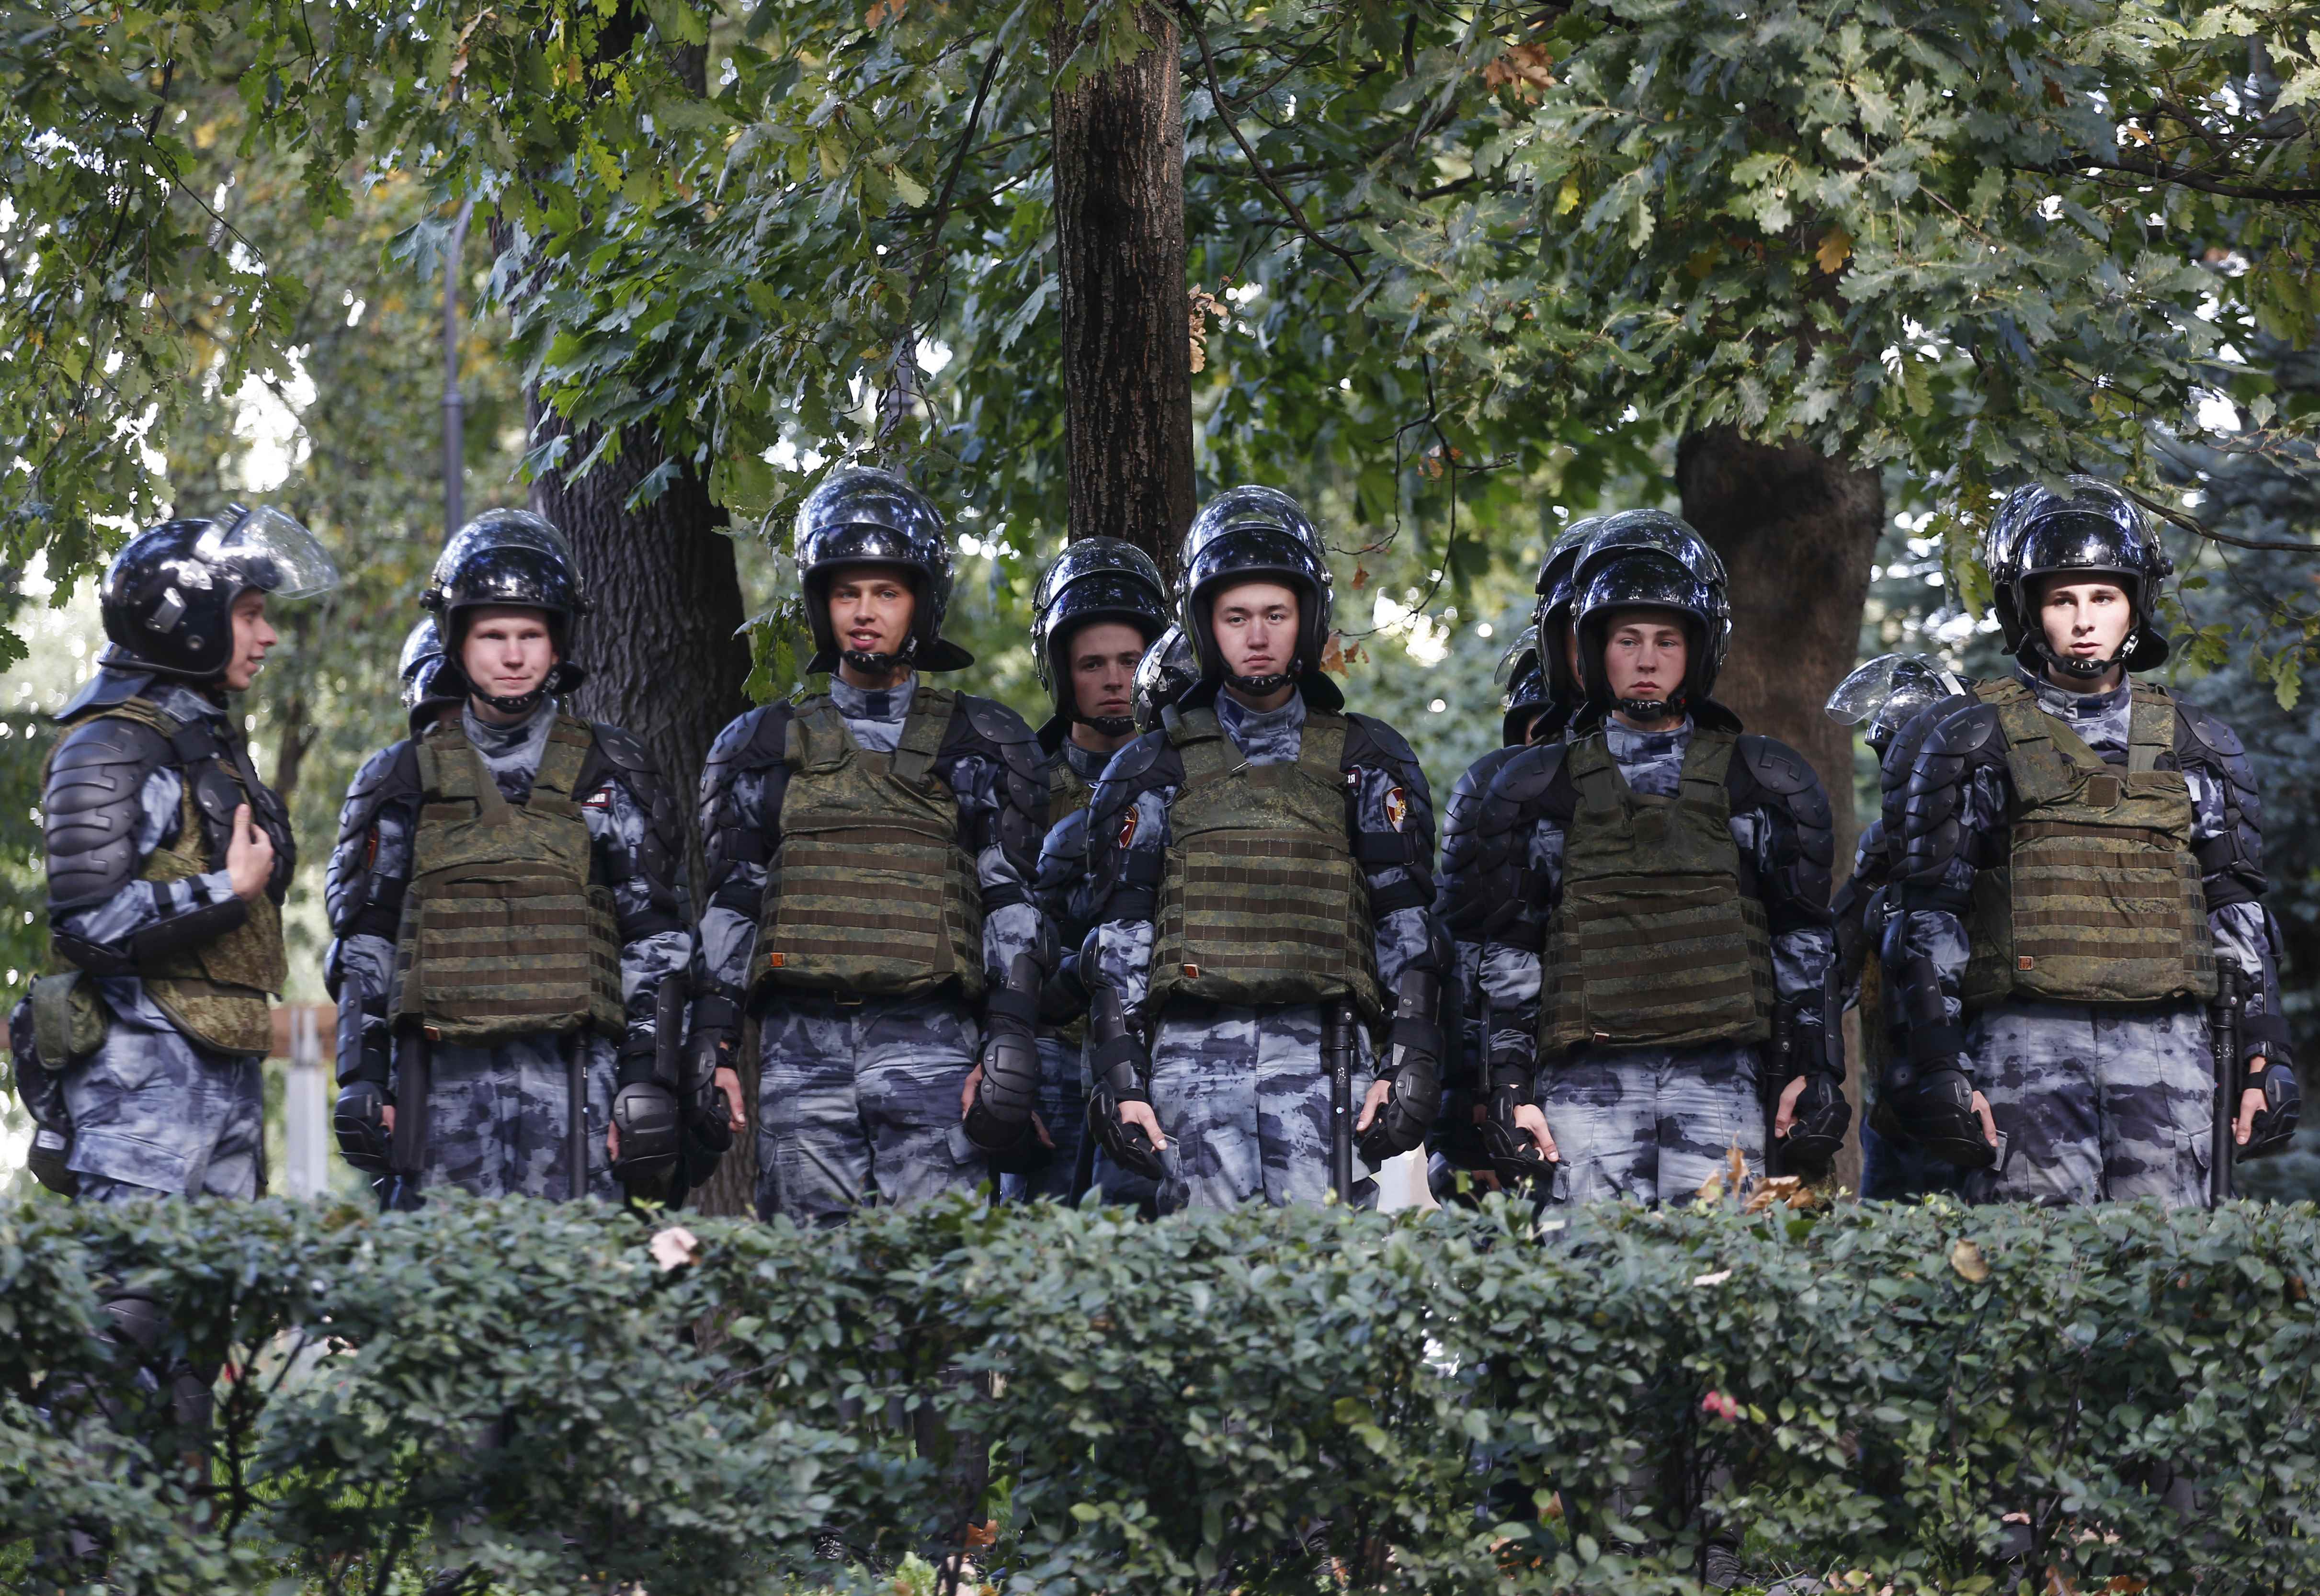 قوات الأمن الروسية تكثف وجودها بمدينة سا بطرسبرج